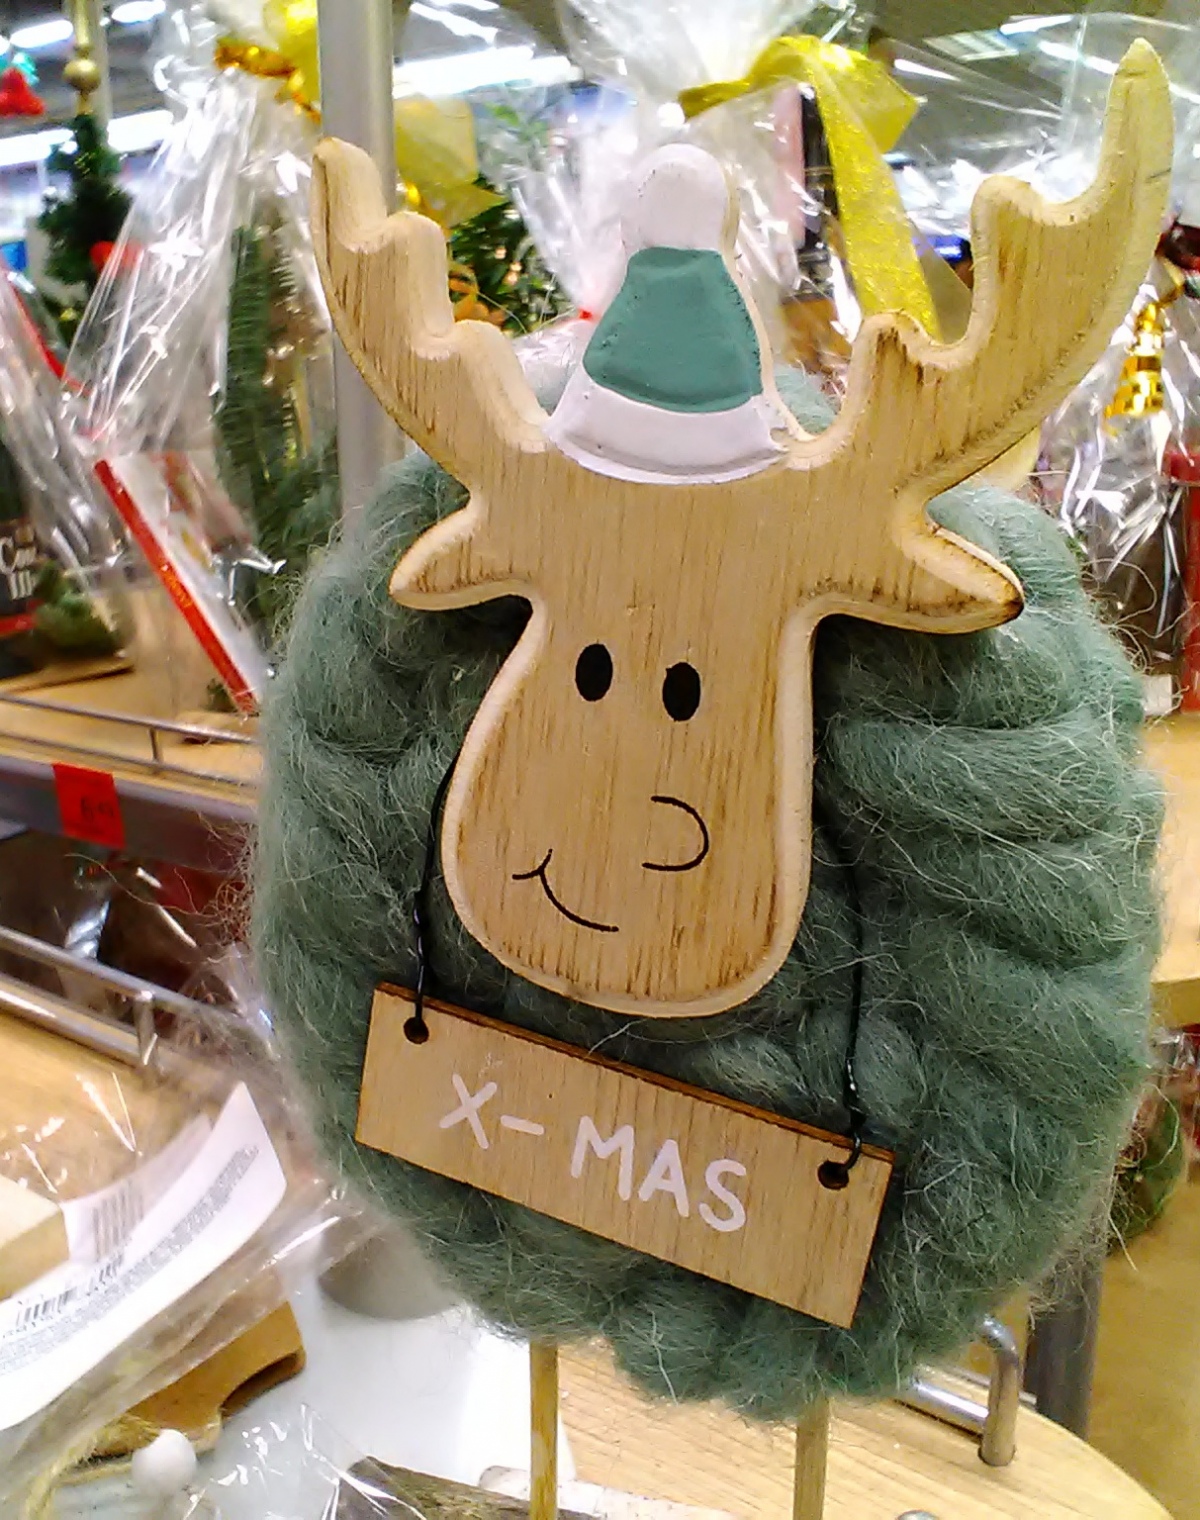 Xmas или Рождество Христово? Что предлагают нам супермаркеты